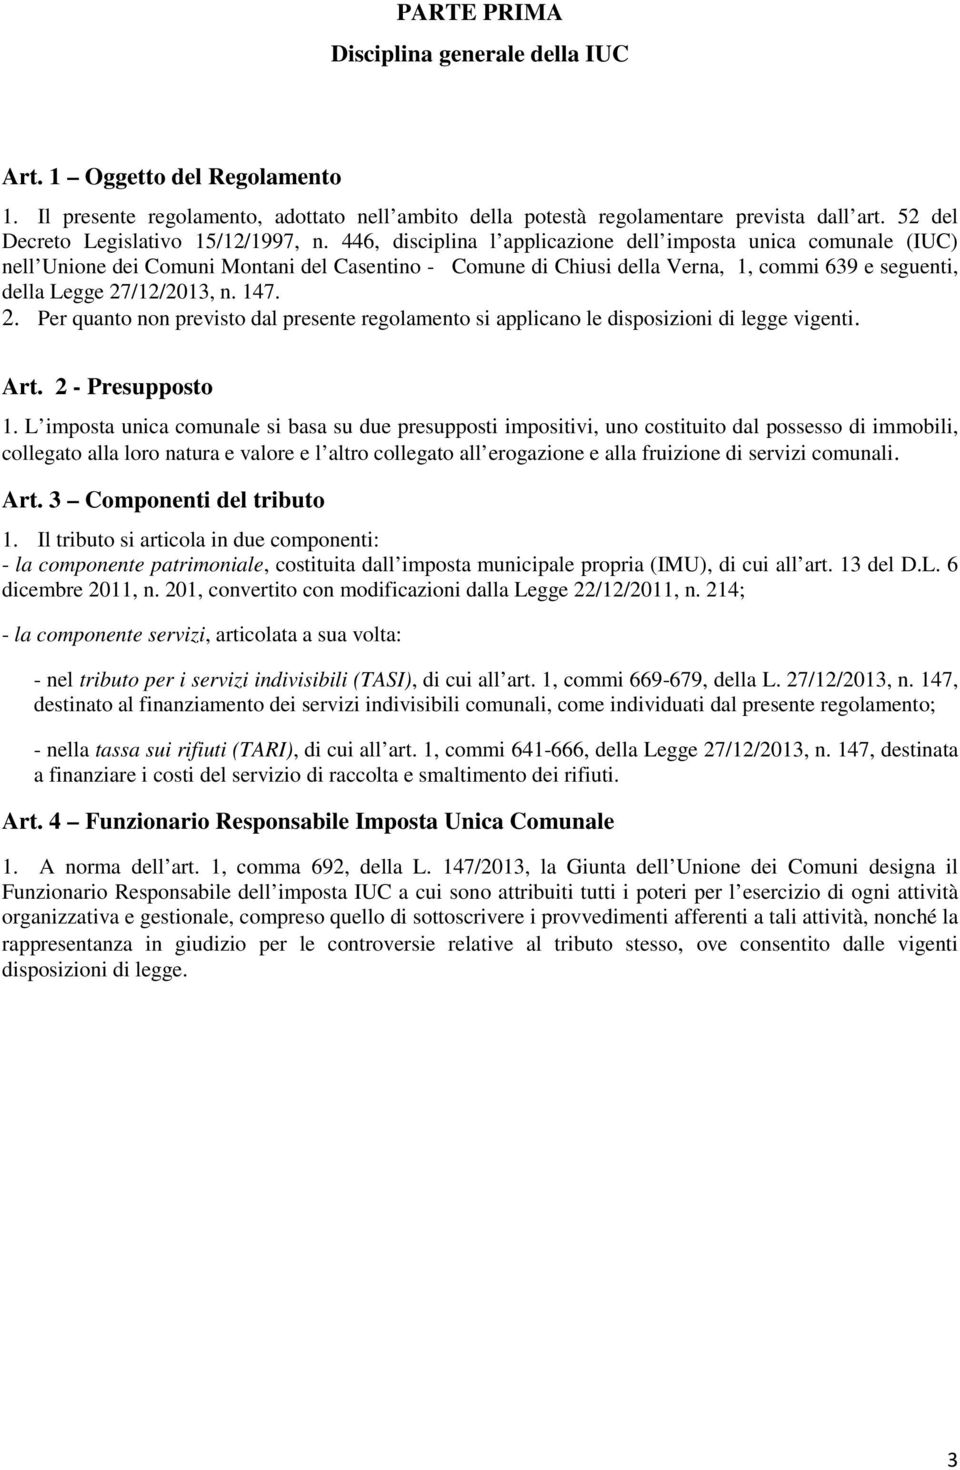 446, disciplina l applicazione dell imposta unica comunale (IUC) nell Unione dei Comuni Montani del Casentino - Comune di Chiusi della Verna, 1, commi 639 e seguenti, della Legge 27/12/2013, n. 147.